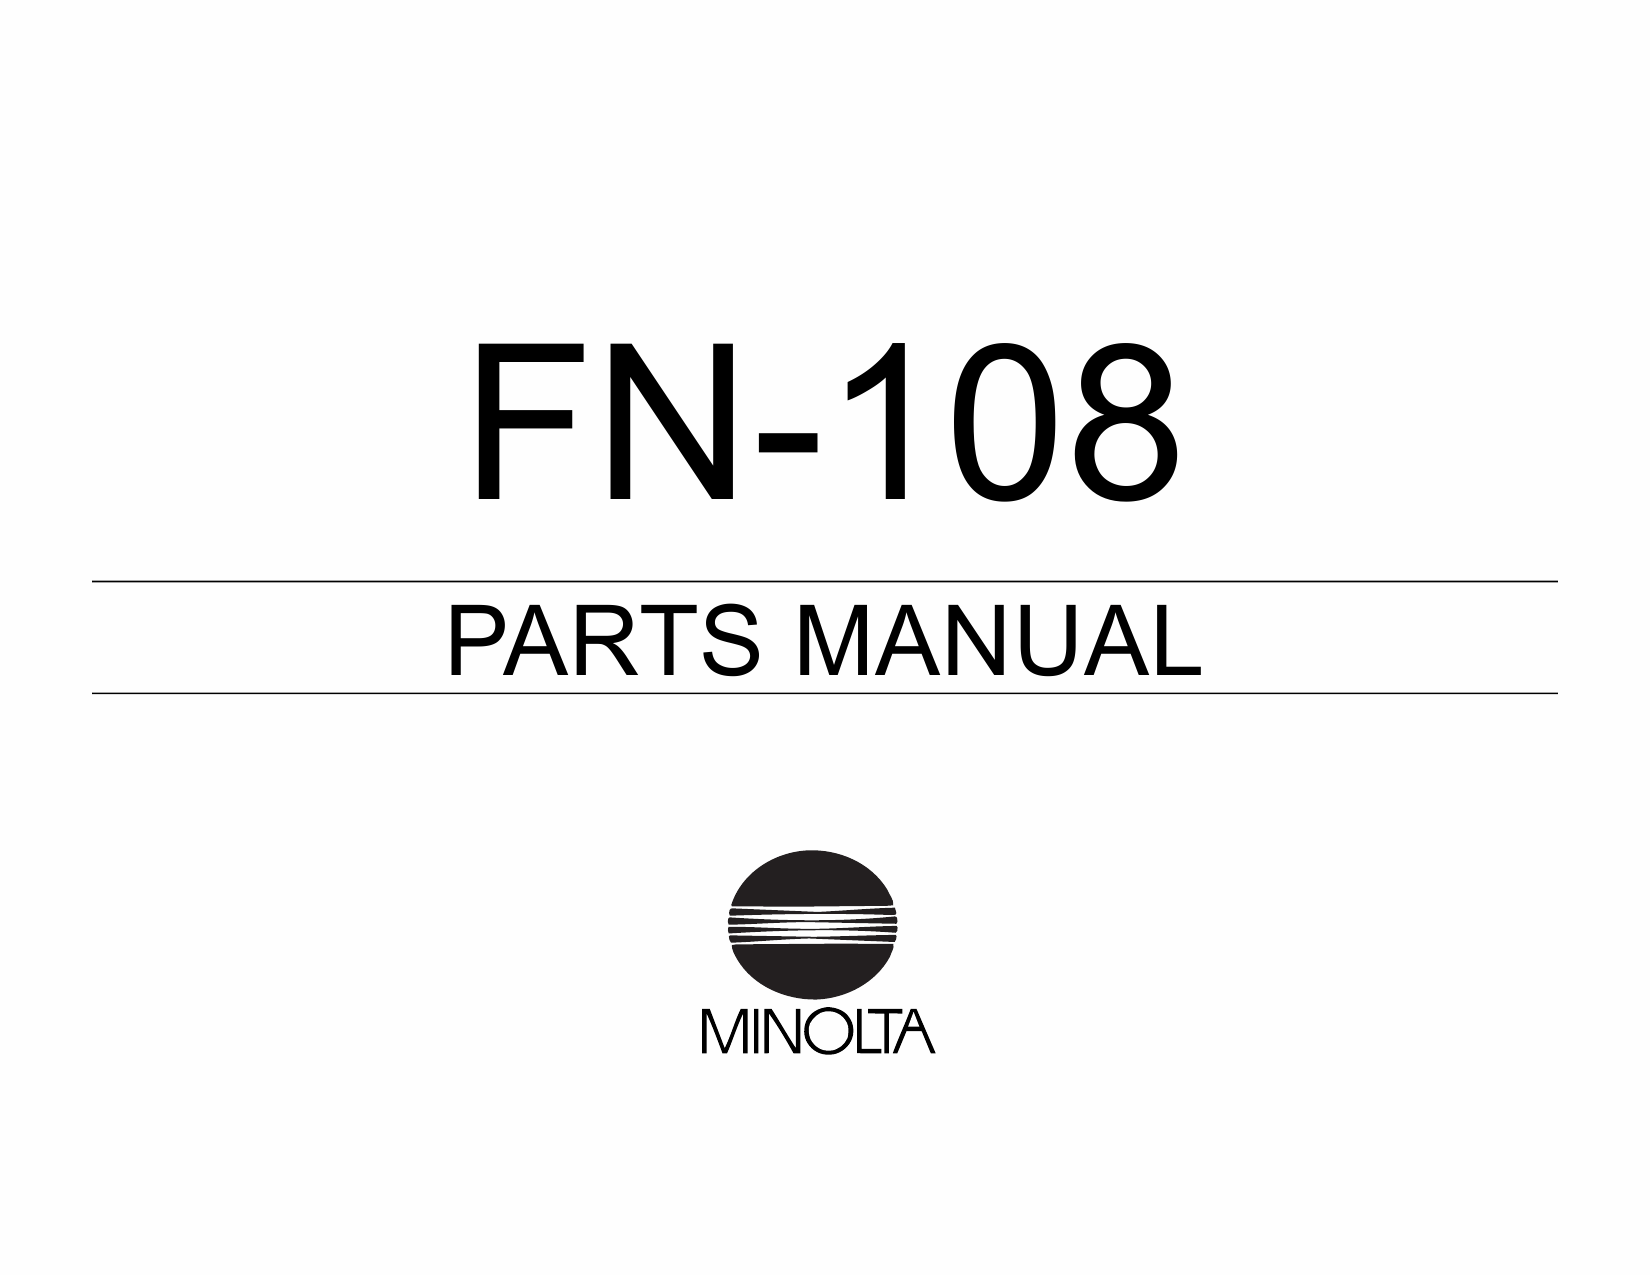 Konica-Minolta Options FN-108 Parts Manual-1